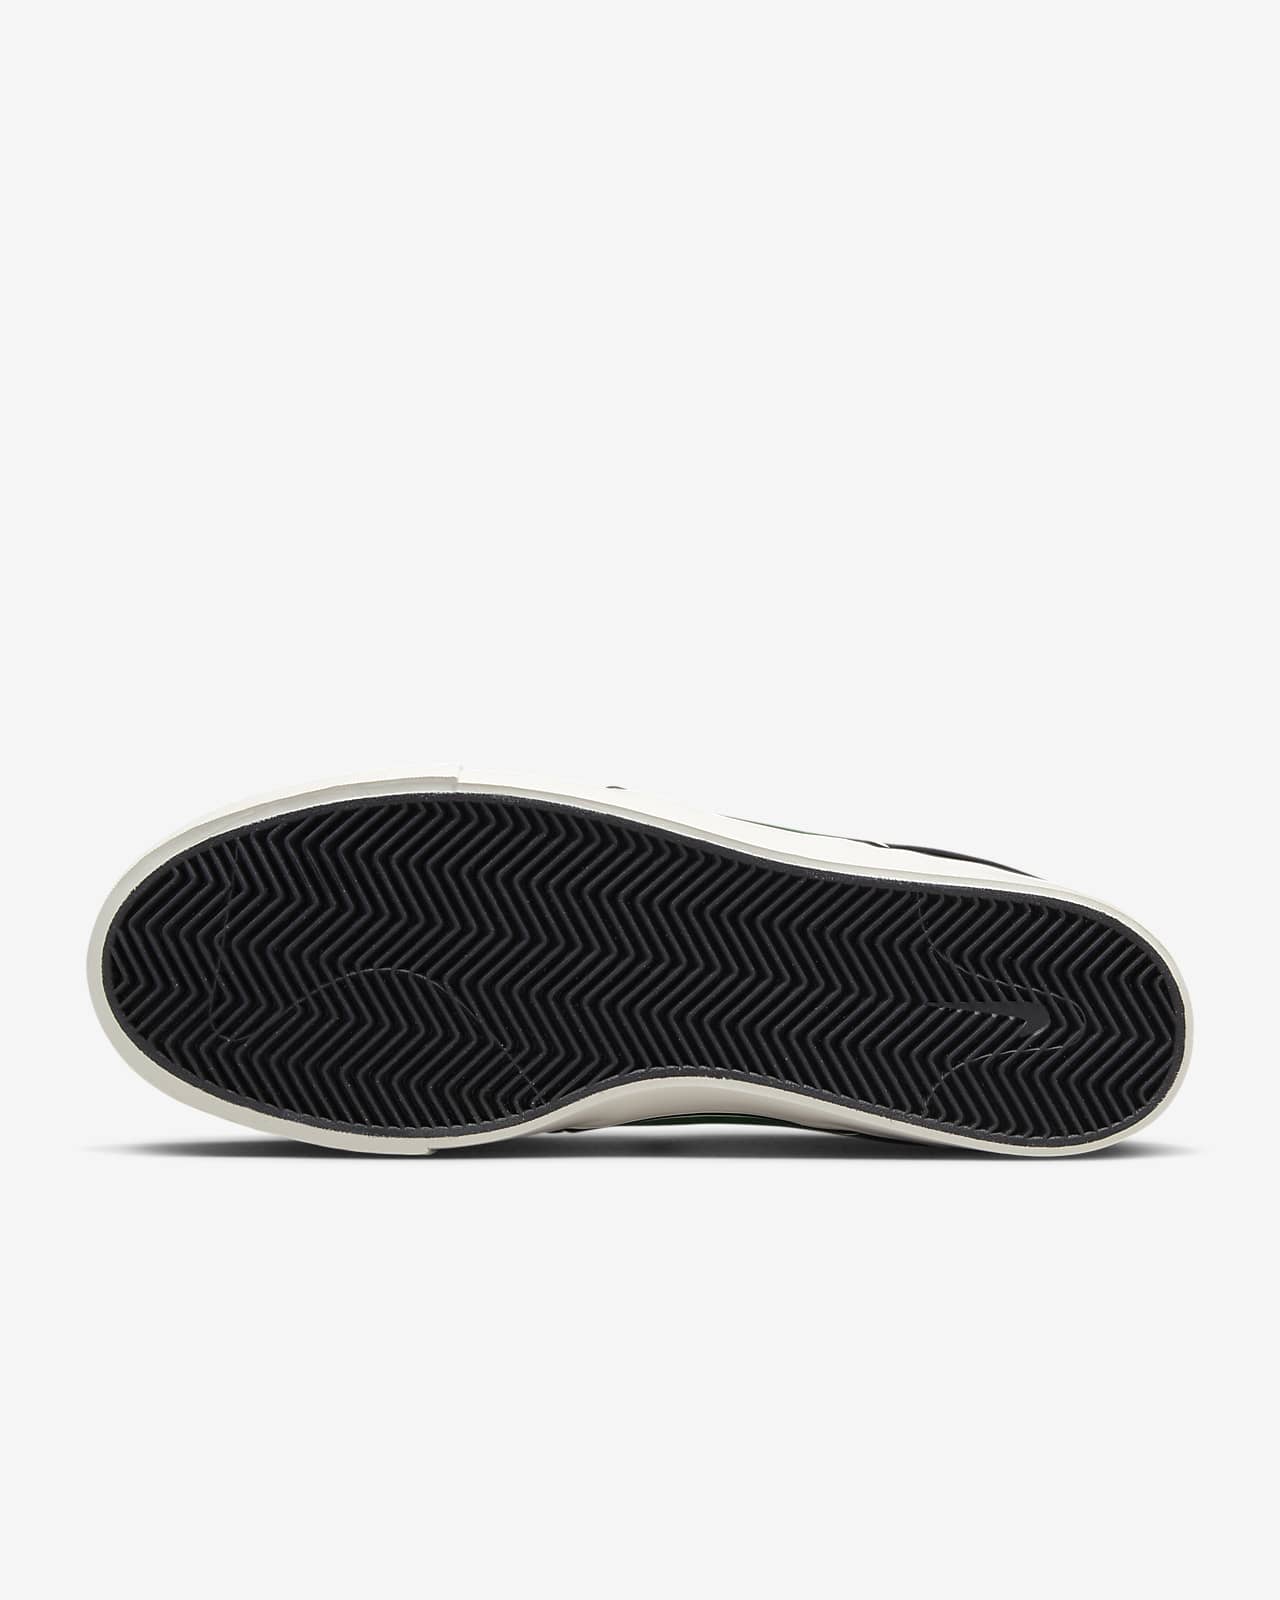 Nike Janoski OG+ Shoes.